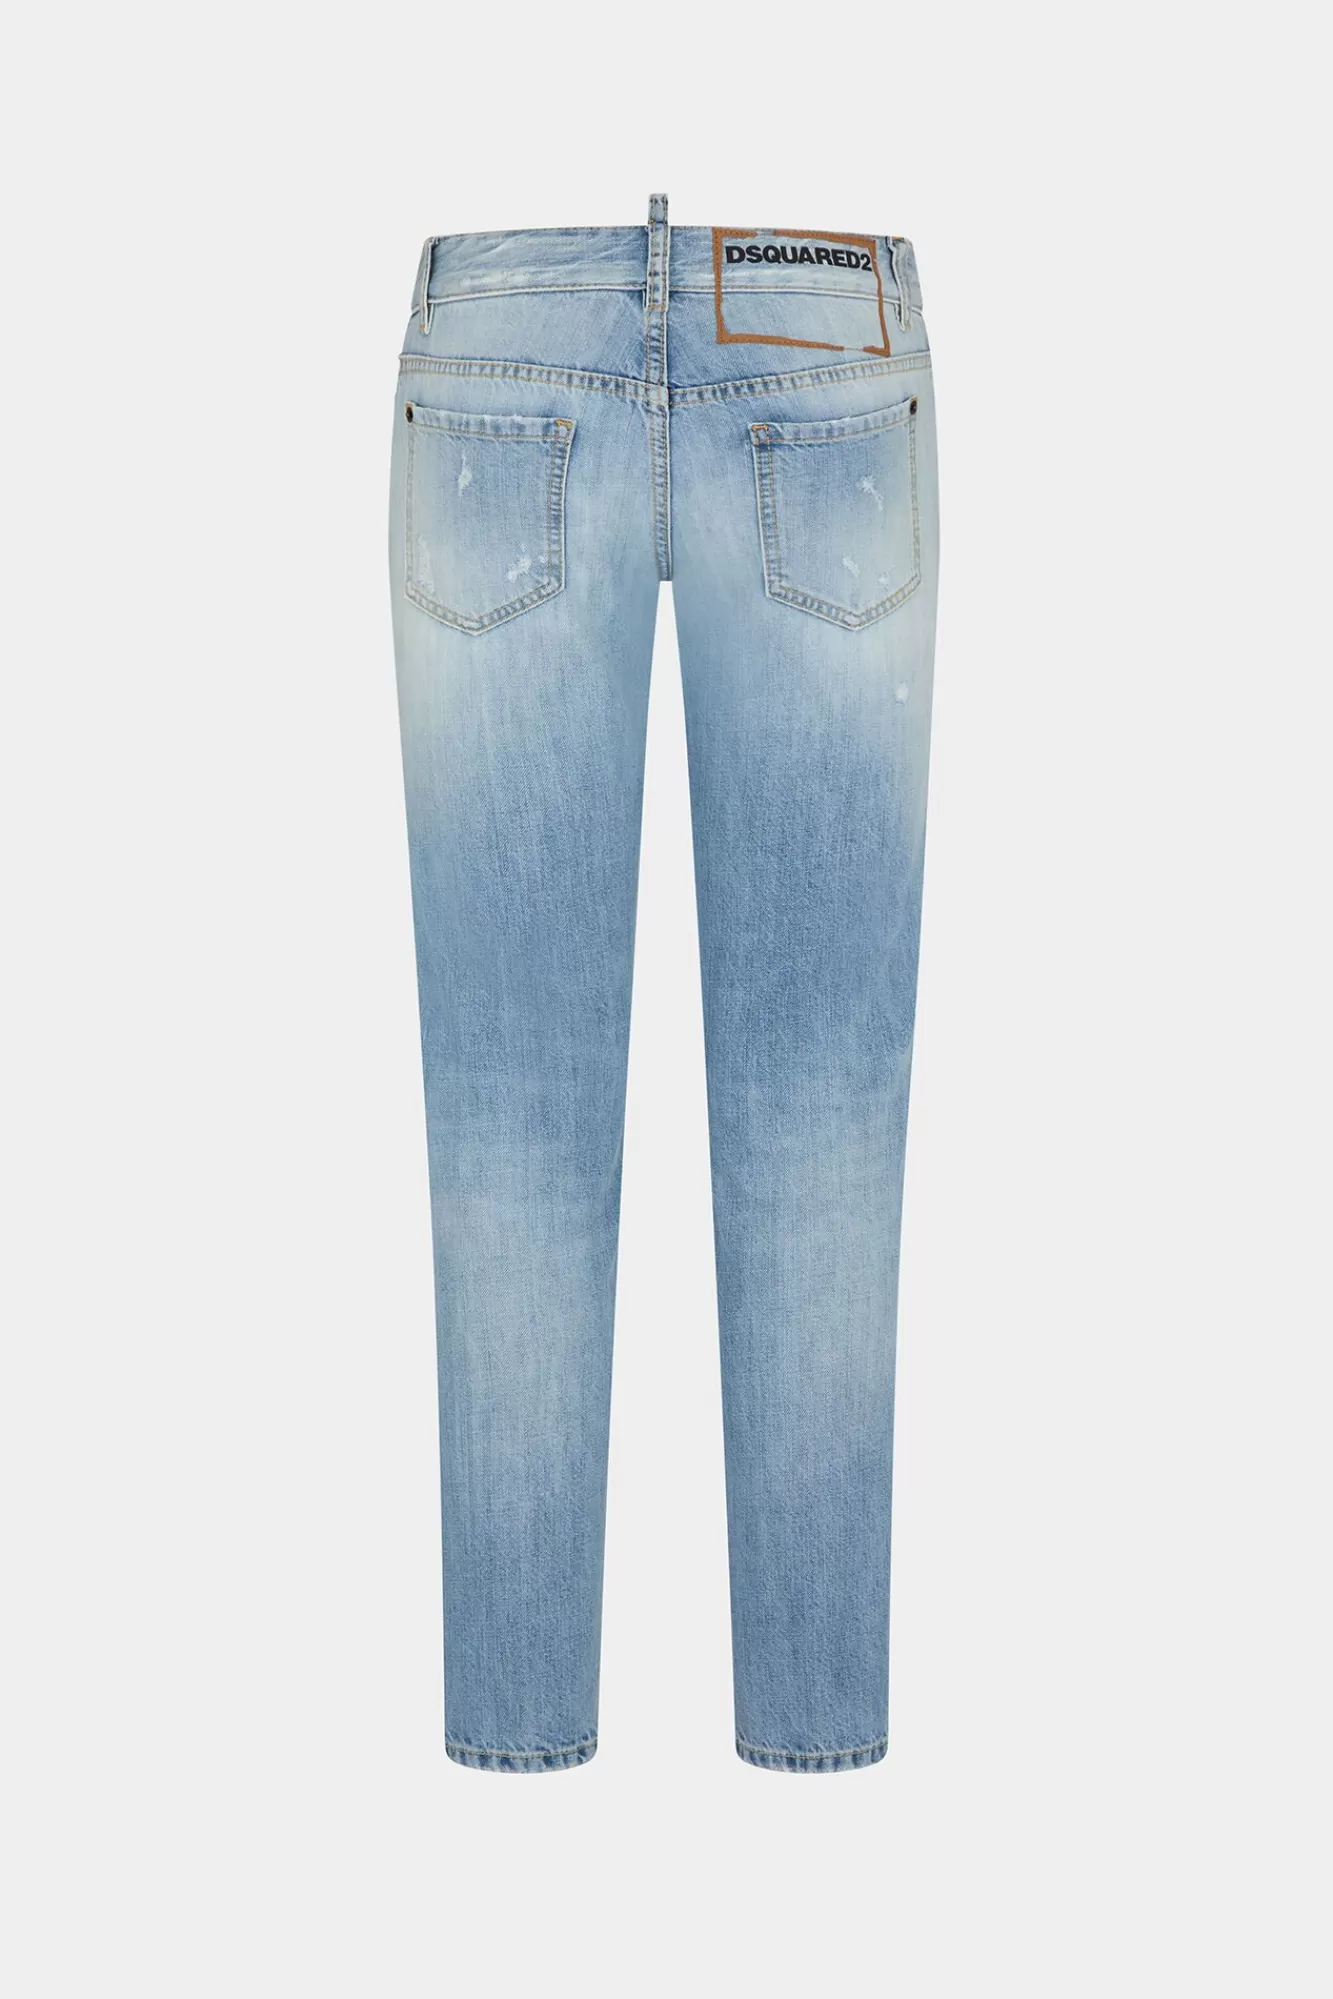 Beverly Hills Light Wash Jennifer Jeans<Dsquared2 Flash Sale